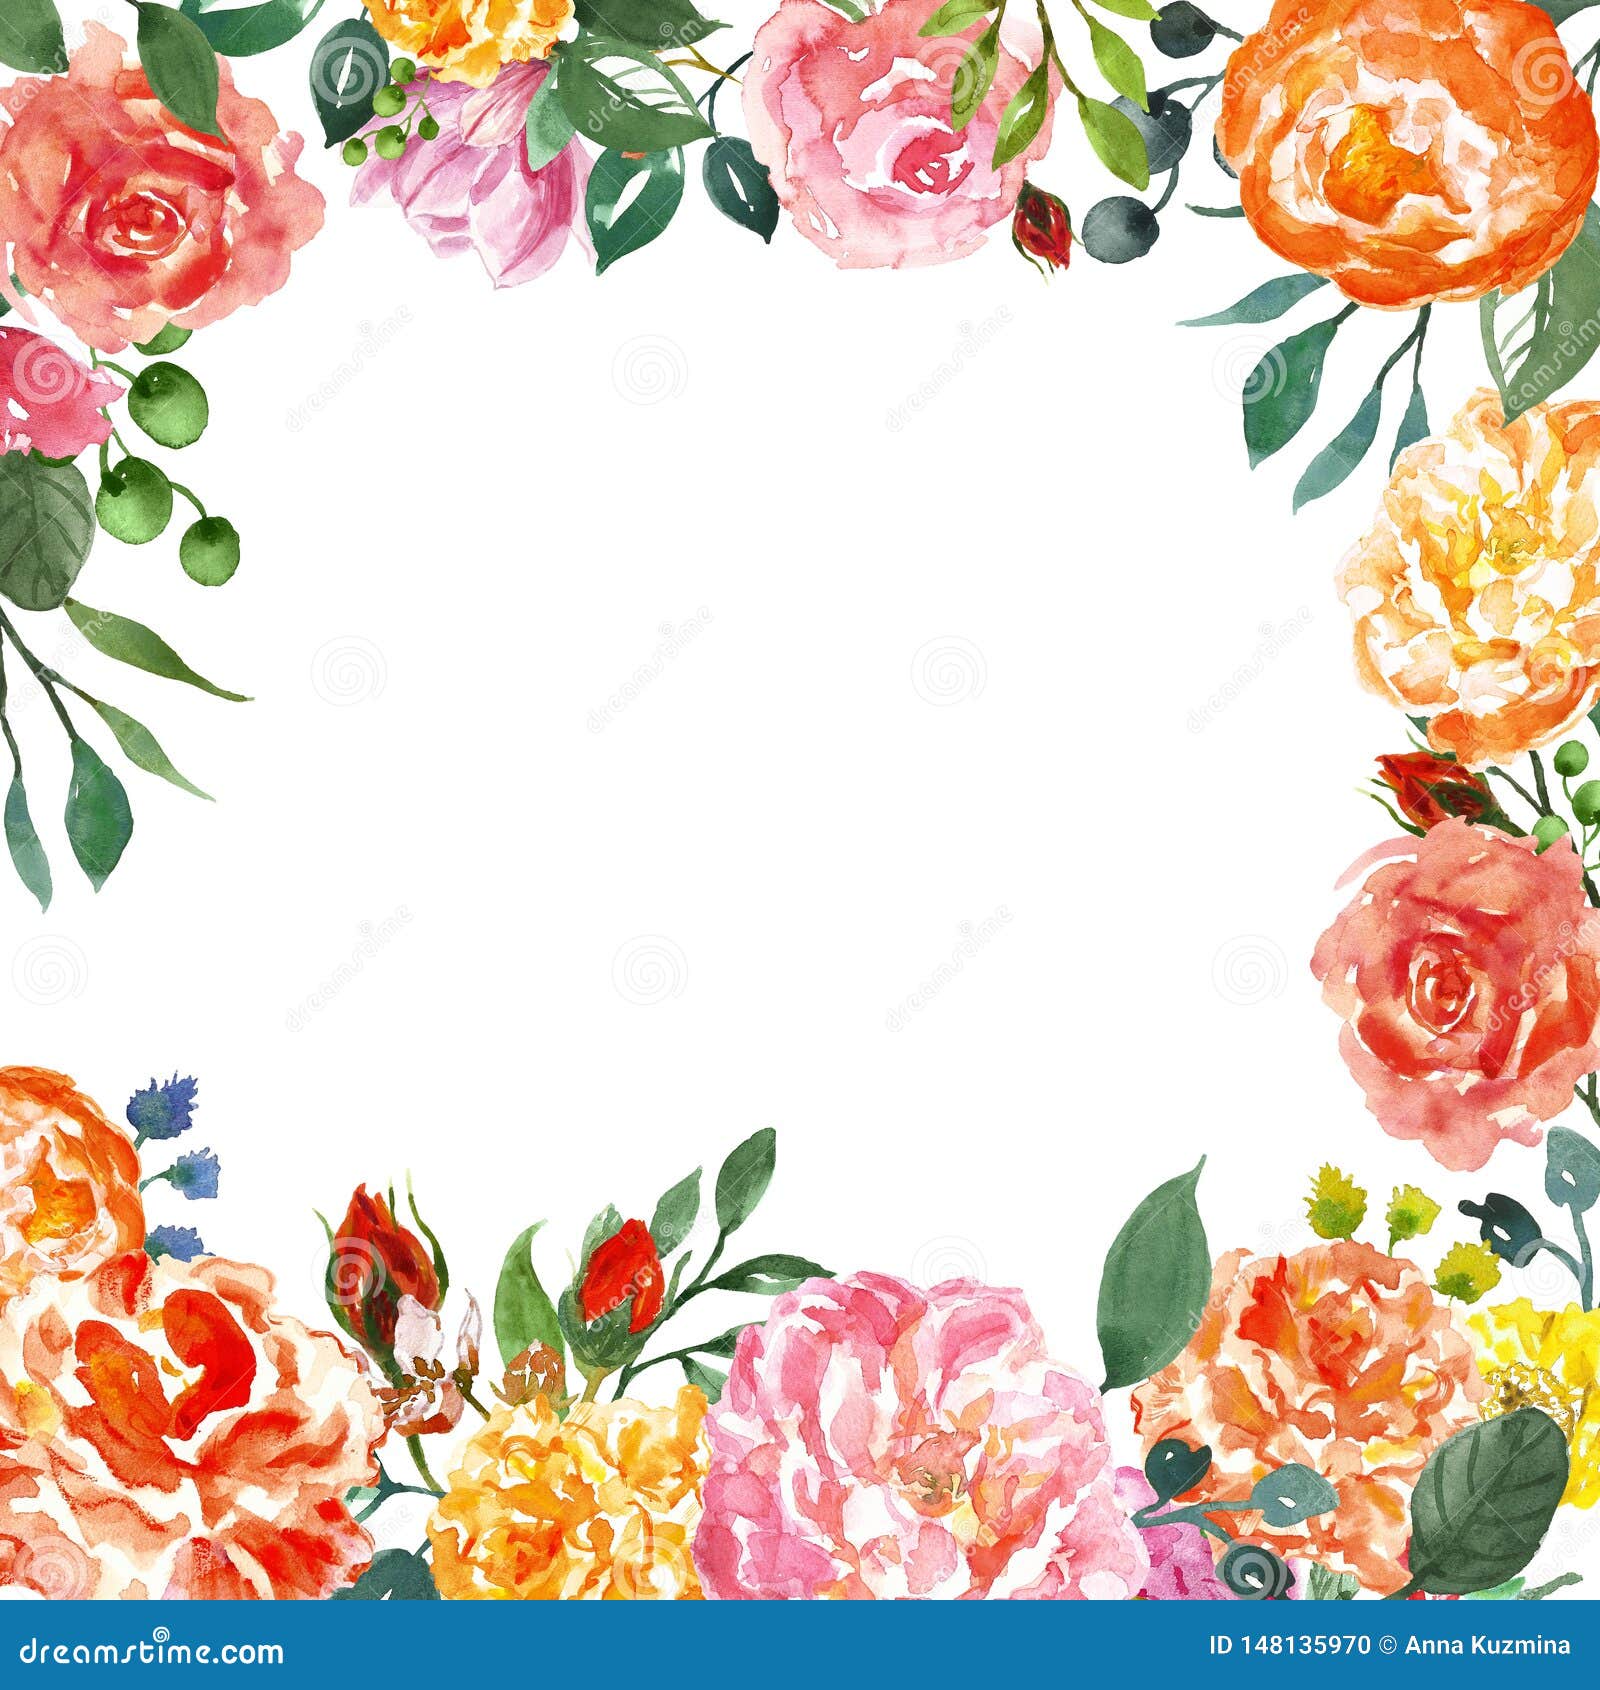 Vòng hoa này sẽ khiến bạn liên tưởng đến một khu vườn đầy màu sắc, với những bông hồng cam và hồng tươi tắn. Vòng hoa này đầy sức sống, là món đồ trang trí tuyệt vời để treo cửa, trang trí nhà hoặc thậm chí sử dụng trong buổi lễ cưới của bạn.